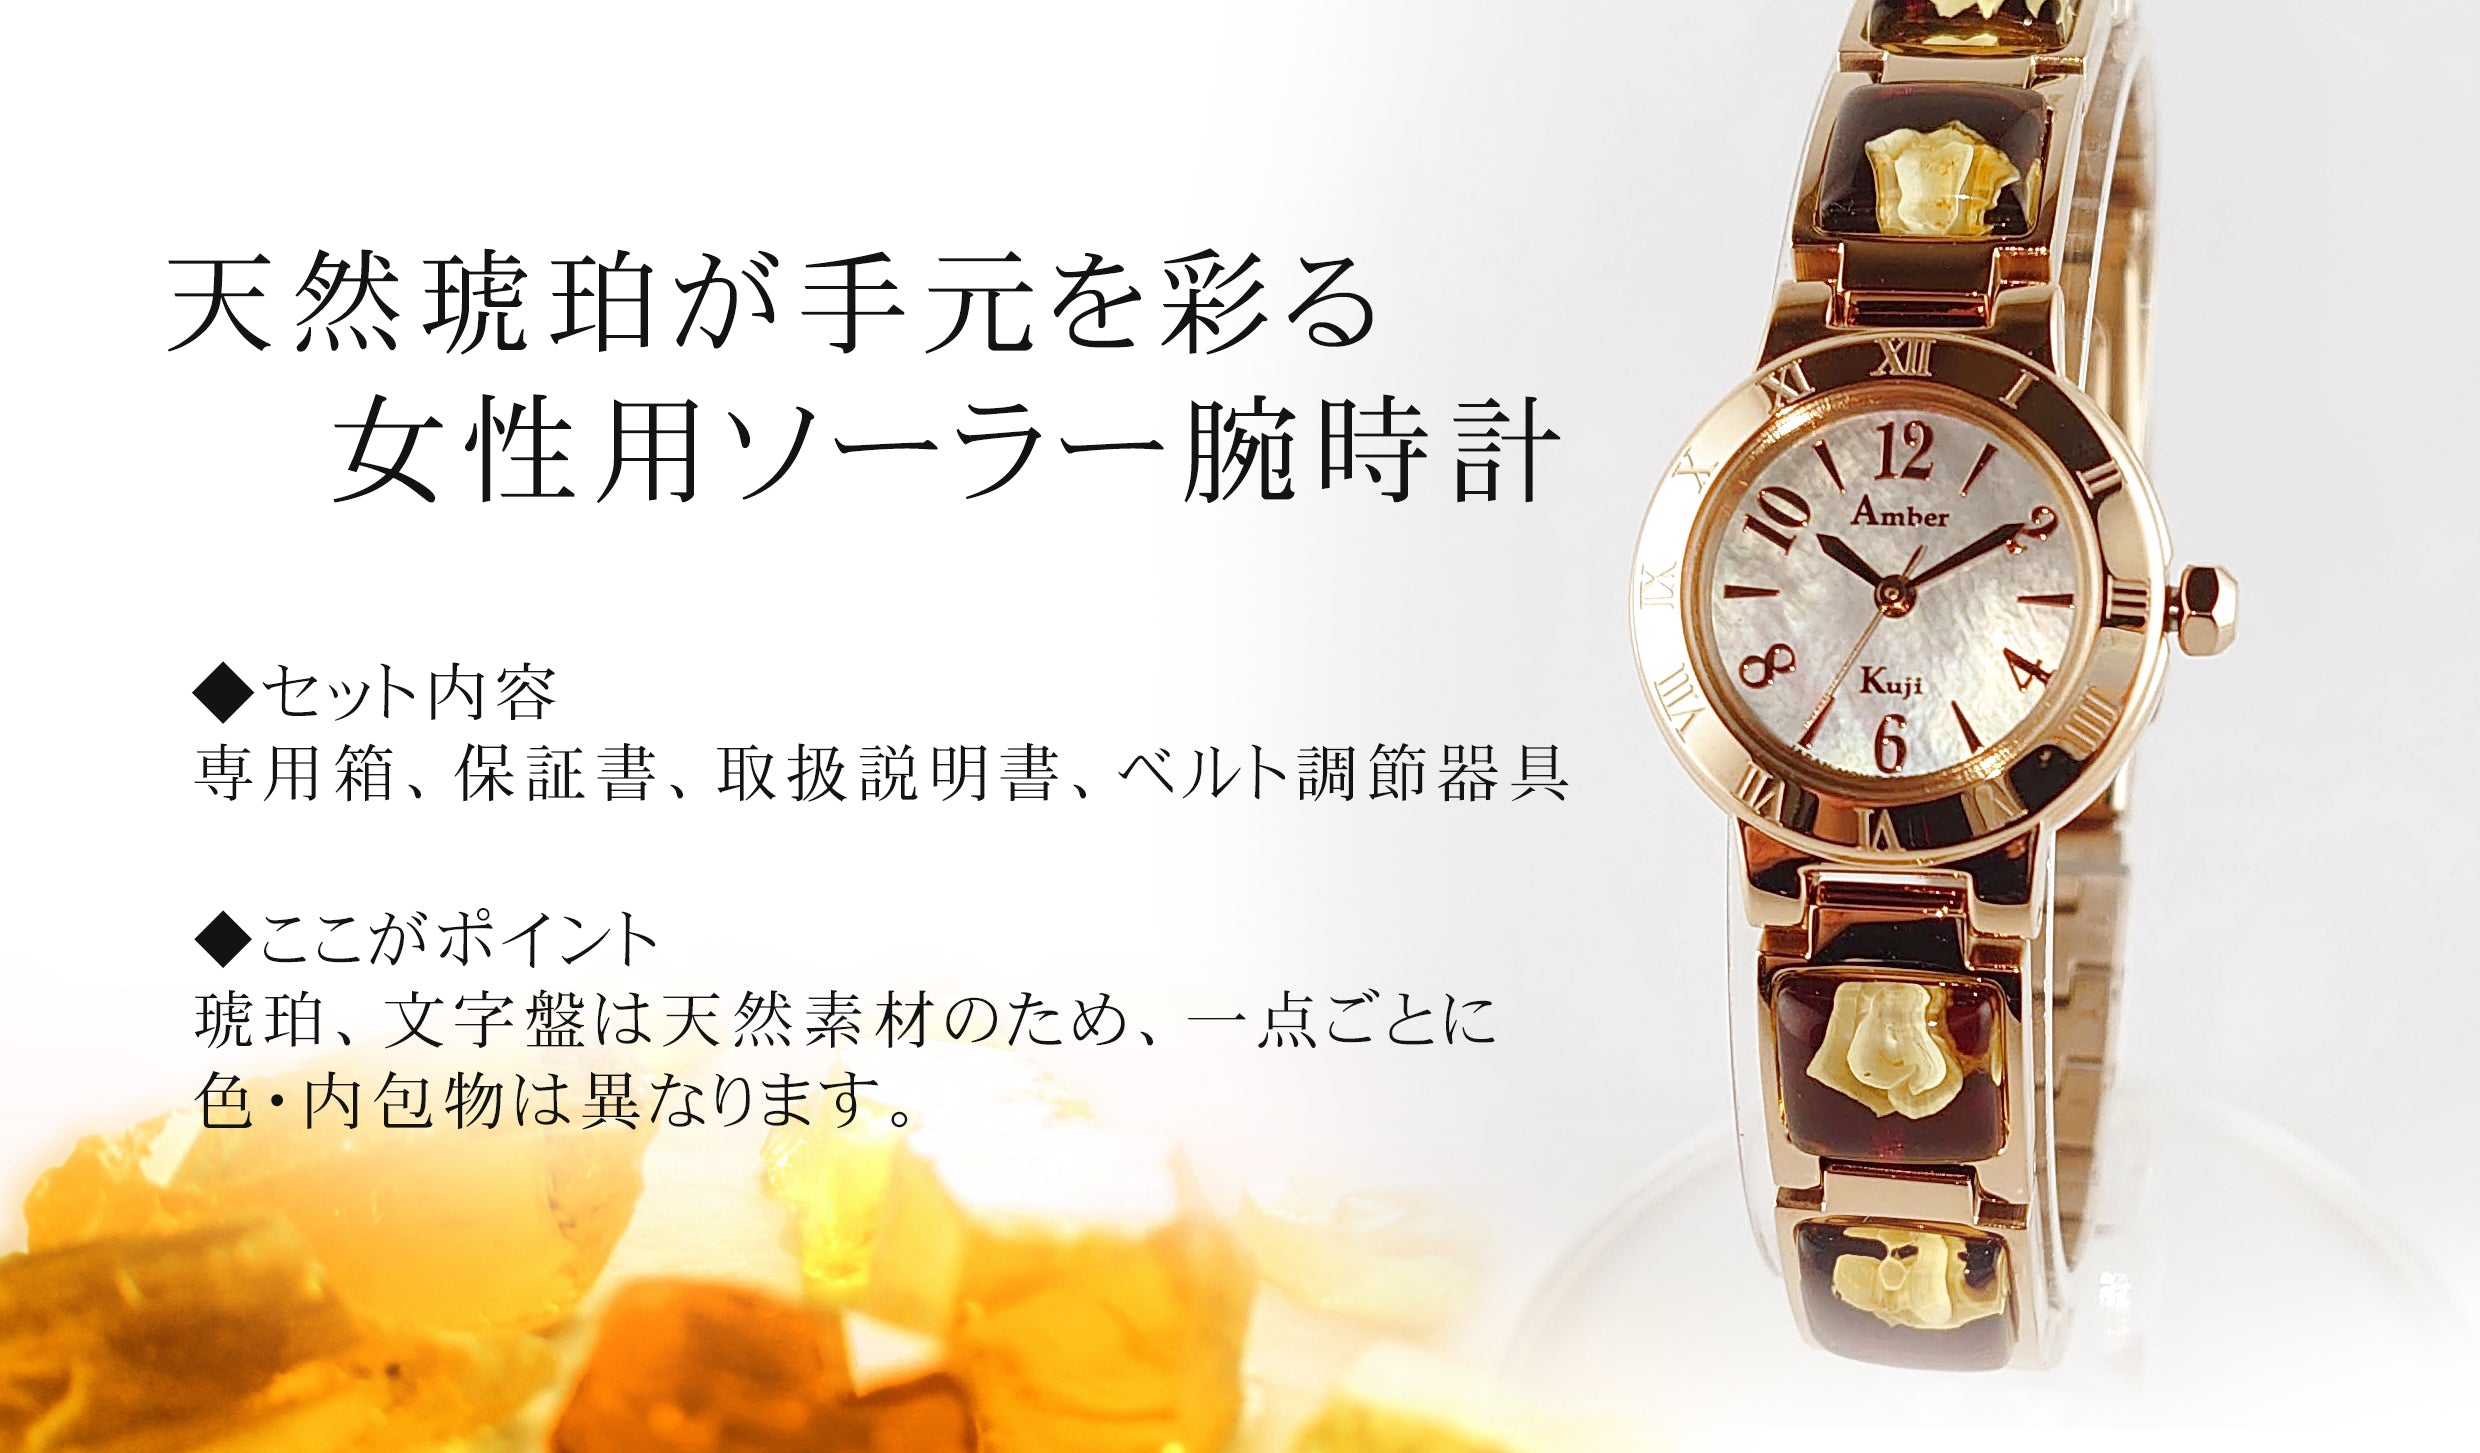 久慈琥珀 琥珀ソーラー腕時計 | 花巻温泉 公式オンラインショップ